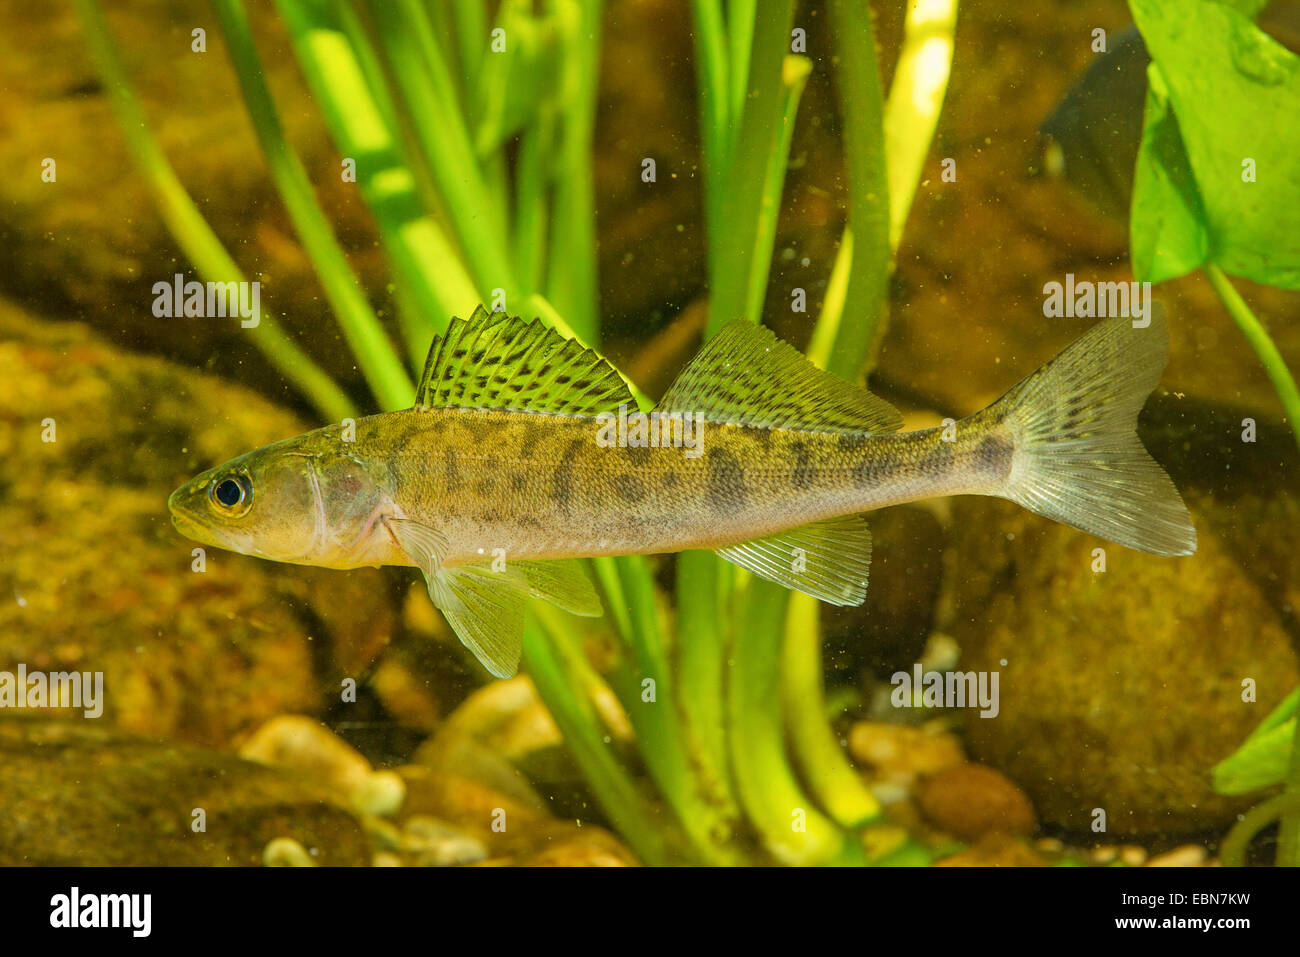 pike-perch, zander (Stizostedion lucioperca, Sander lucioperca), underwater photo of a juvenil zander Stock Photo